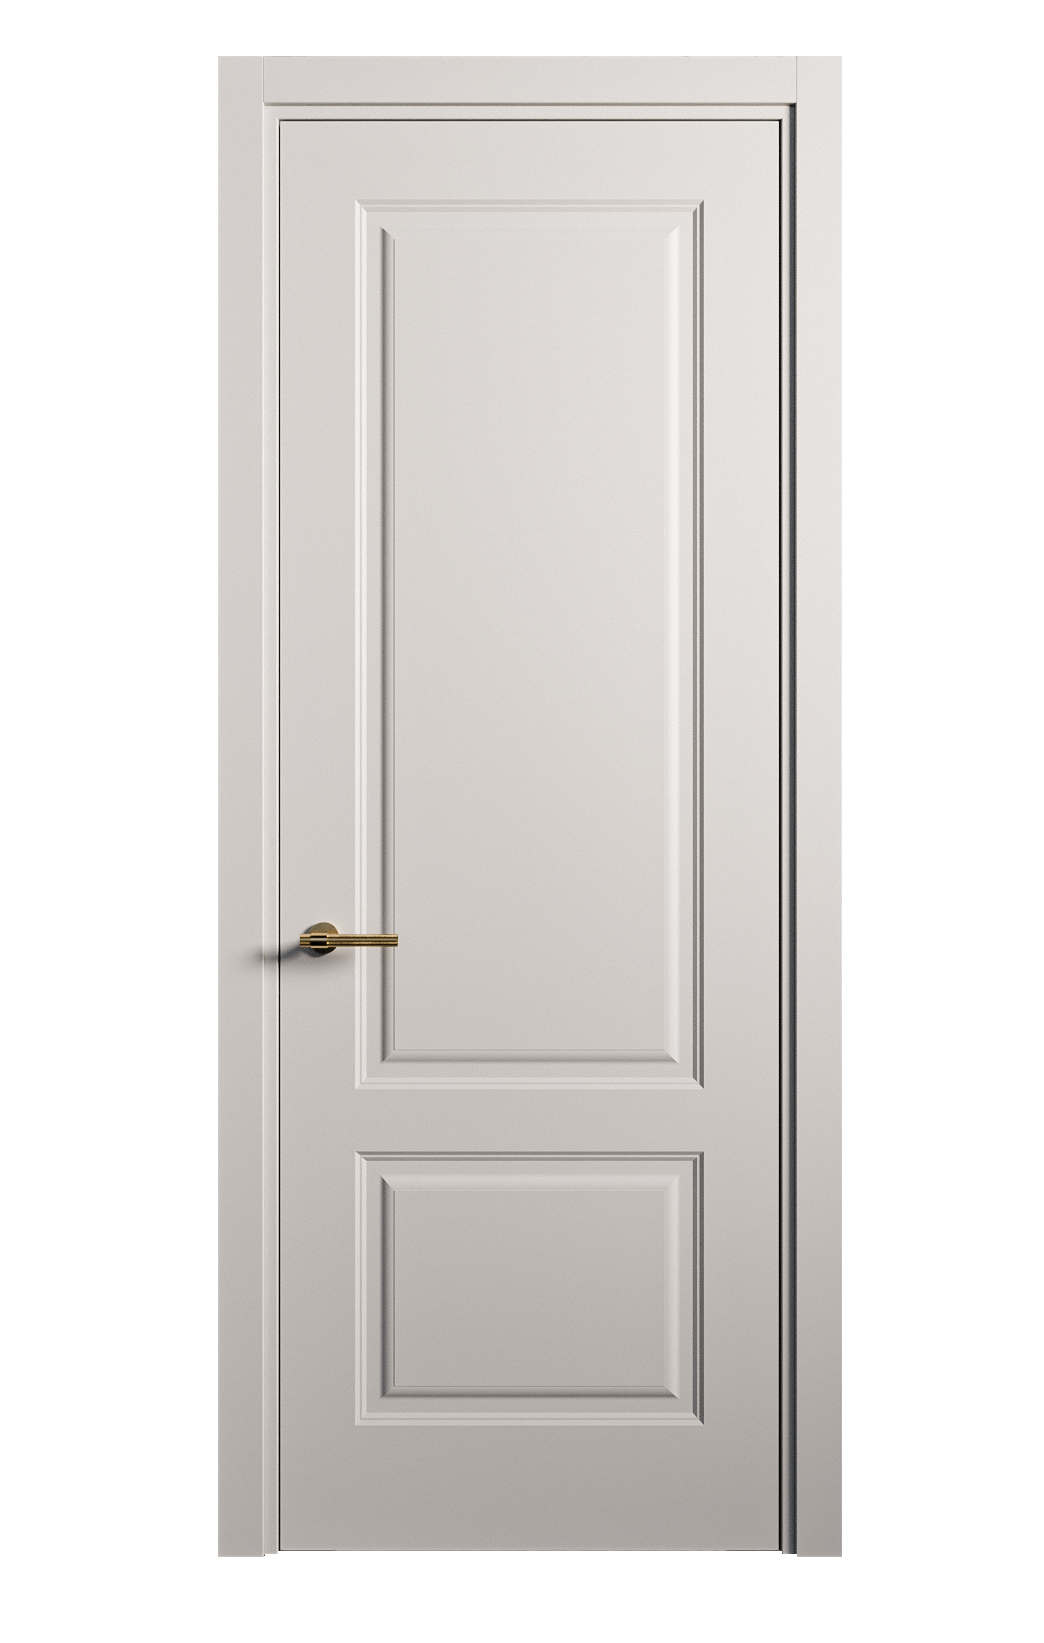 Межкомнатная дверь Вита-1 глухая эмаль ral 7047 26273